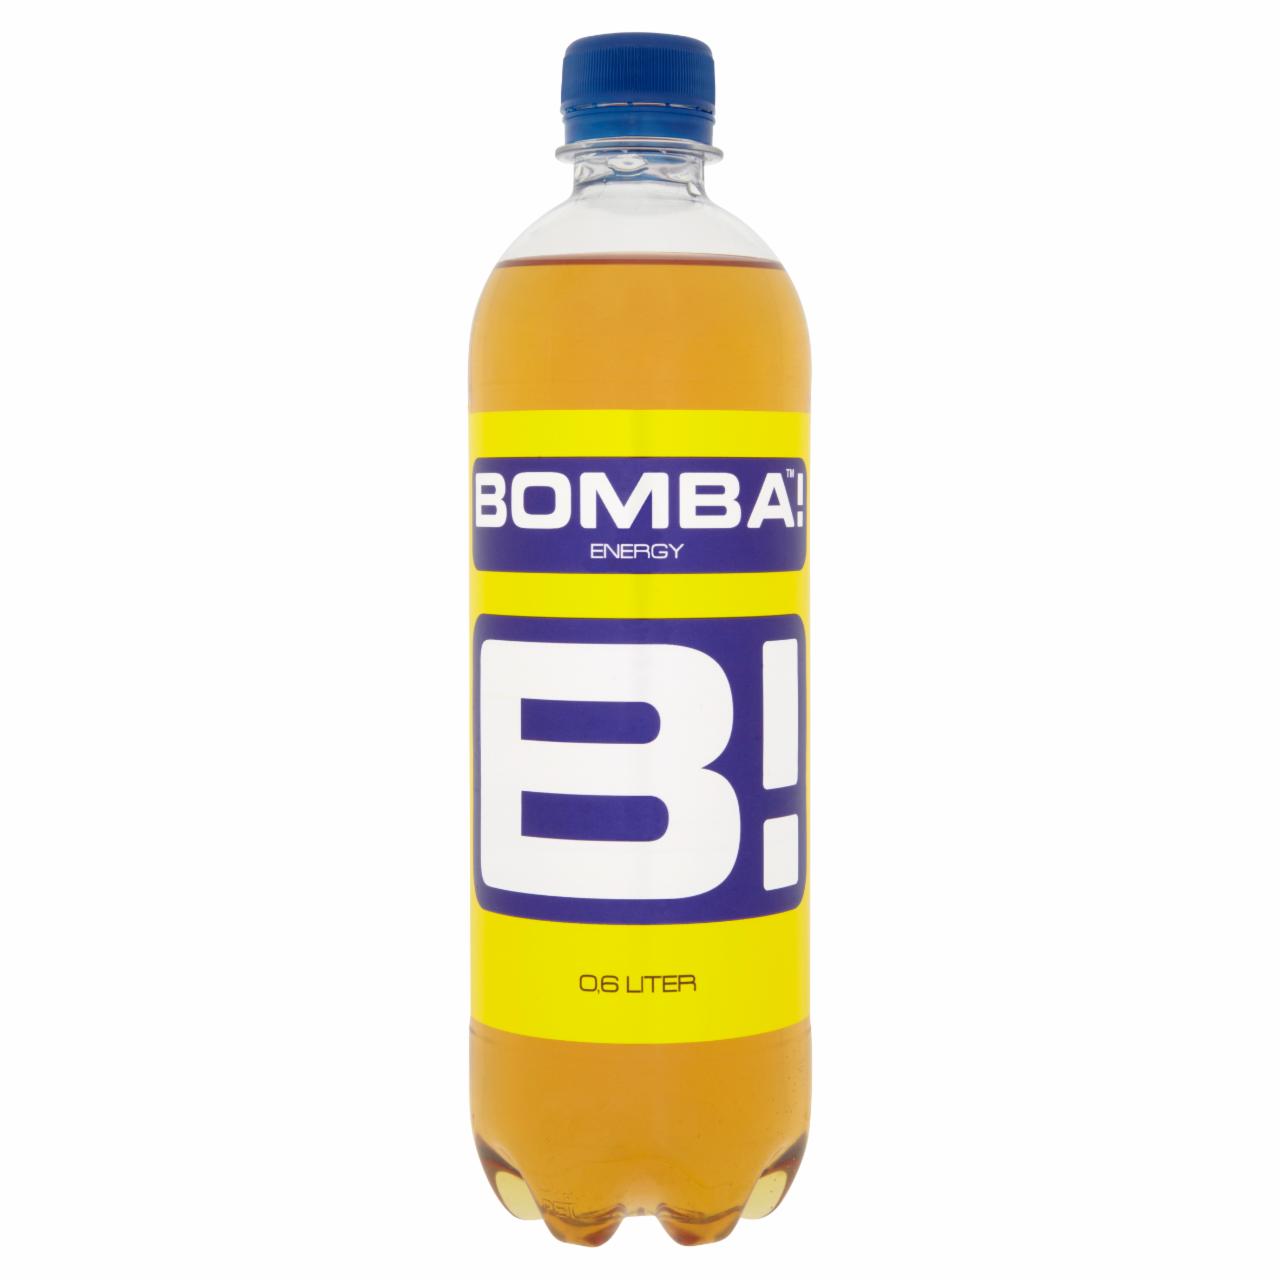 Képek - BOMBA! magas koffeintartalmú, szénsavas, tutti-frutti ízű ital cukorral és édesítőszerrel 600 ml